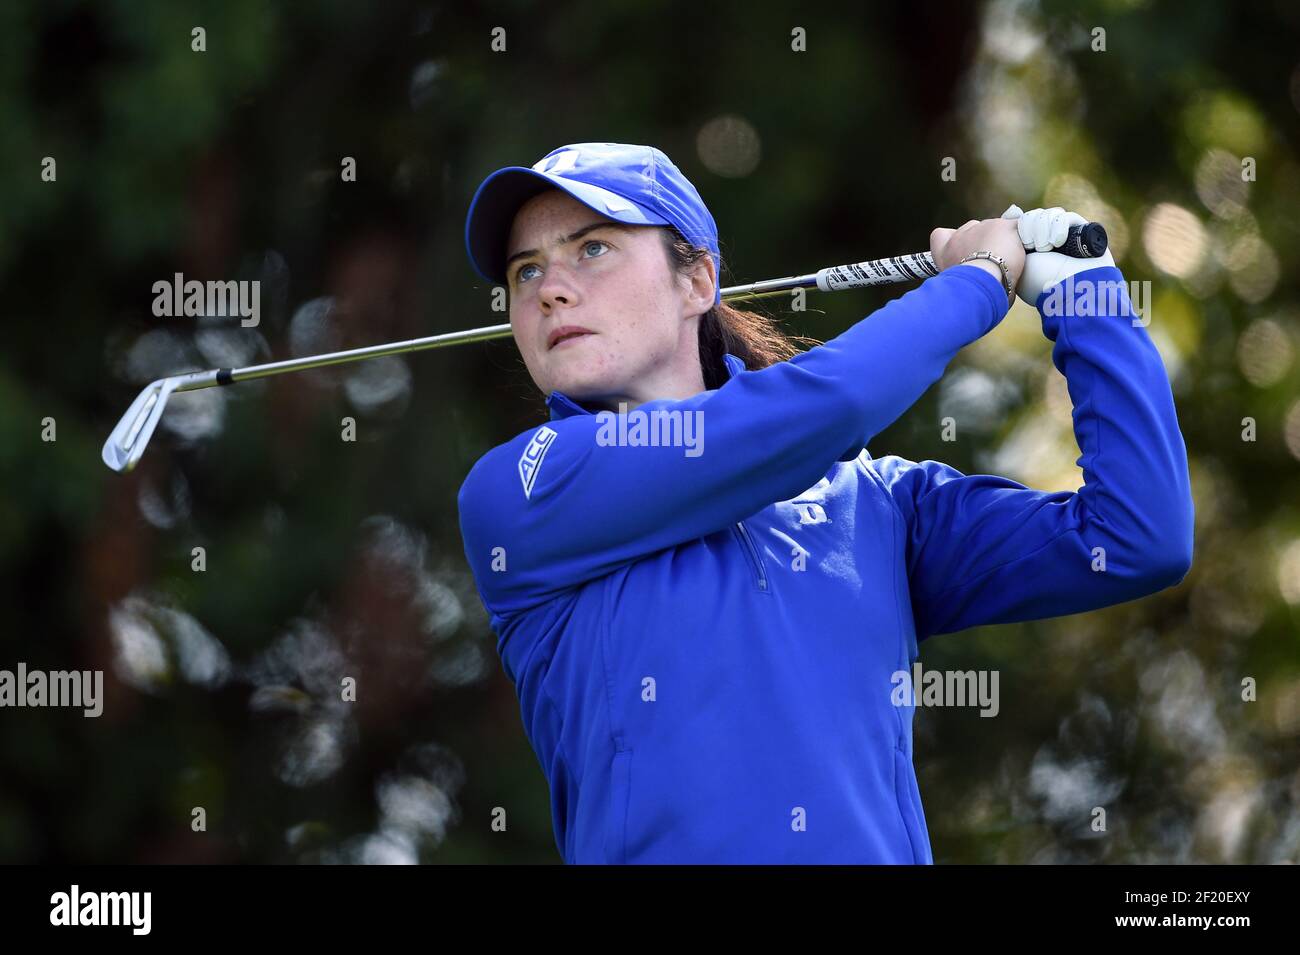 Leaona Maguire d'Irlanda compete durante la prova di LPGA Evian Championship 2015, giorno 1, all'Evian Resort Golf Club, a Evian-Les-Bains, Francia, il 7 settembre 2015. Foto Philippe Millereau / KMSP / DPPI Foto Stock